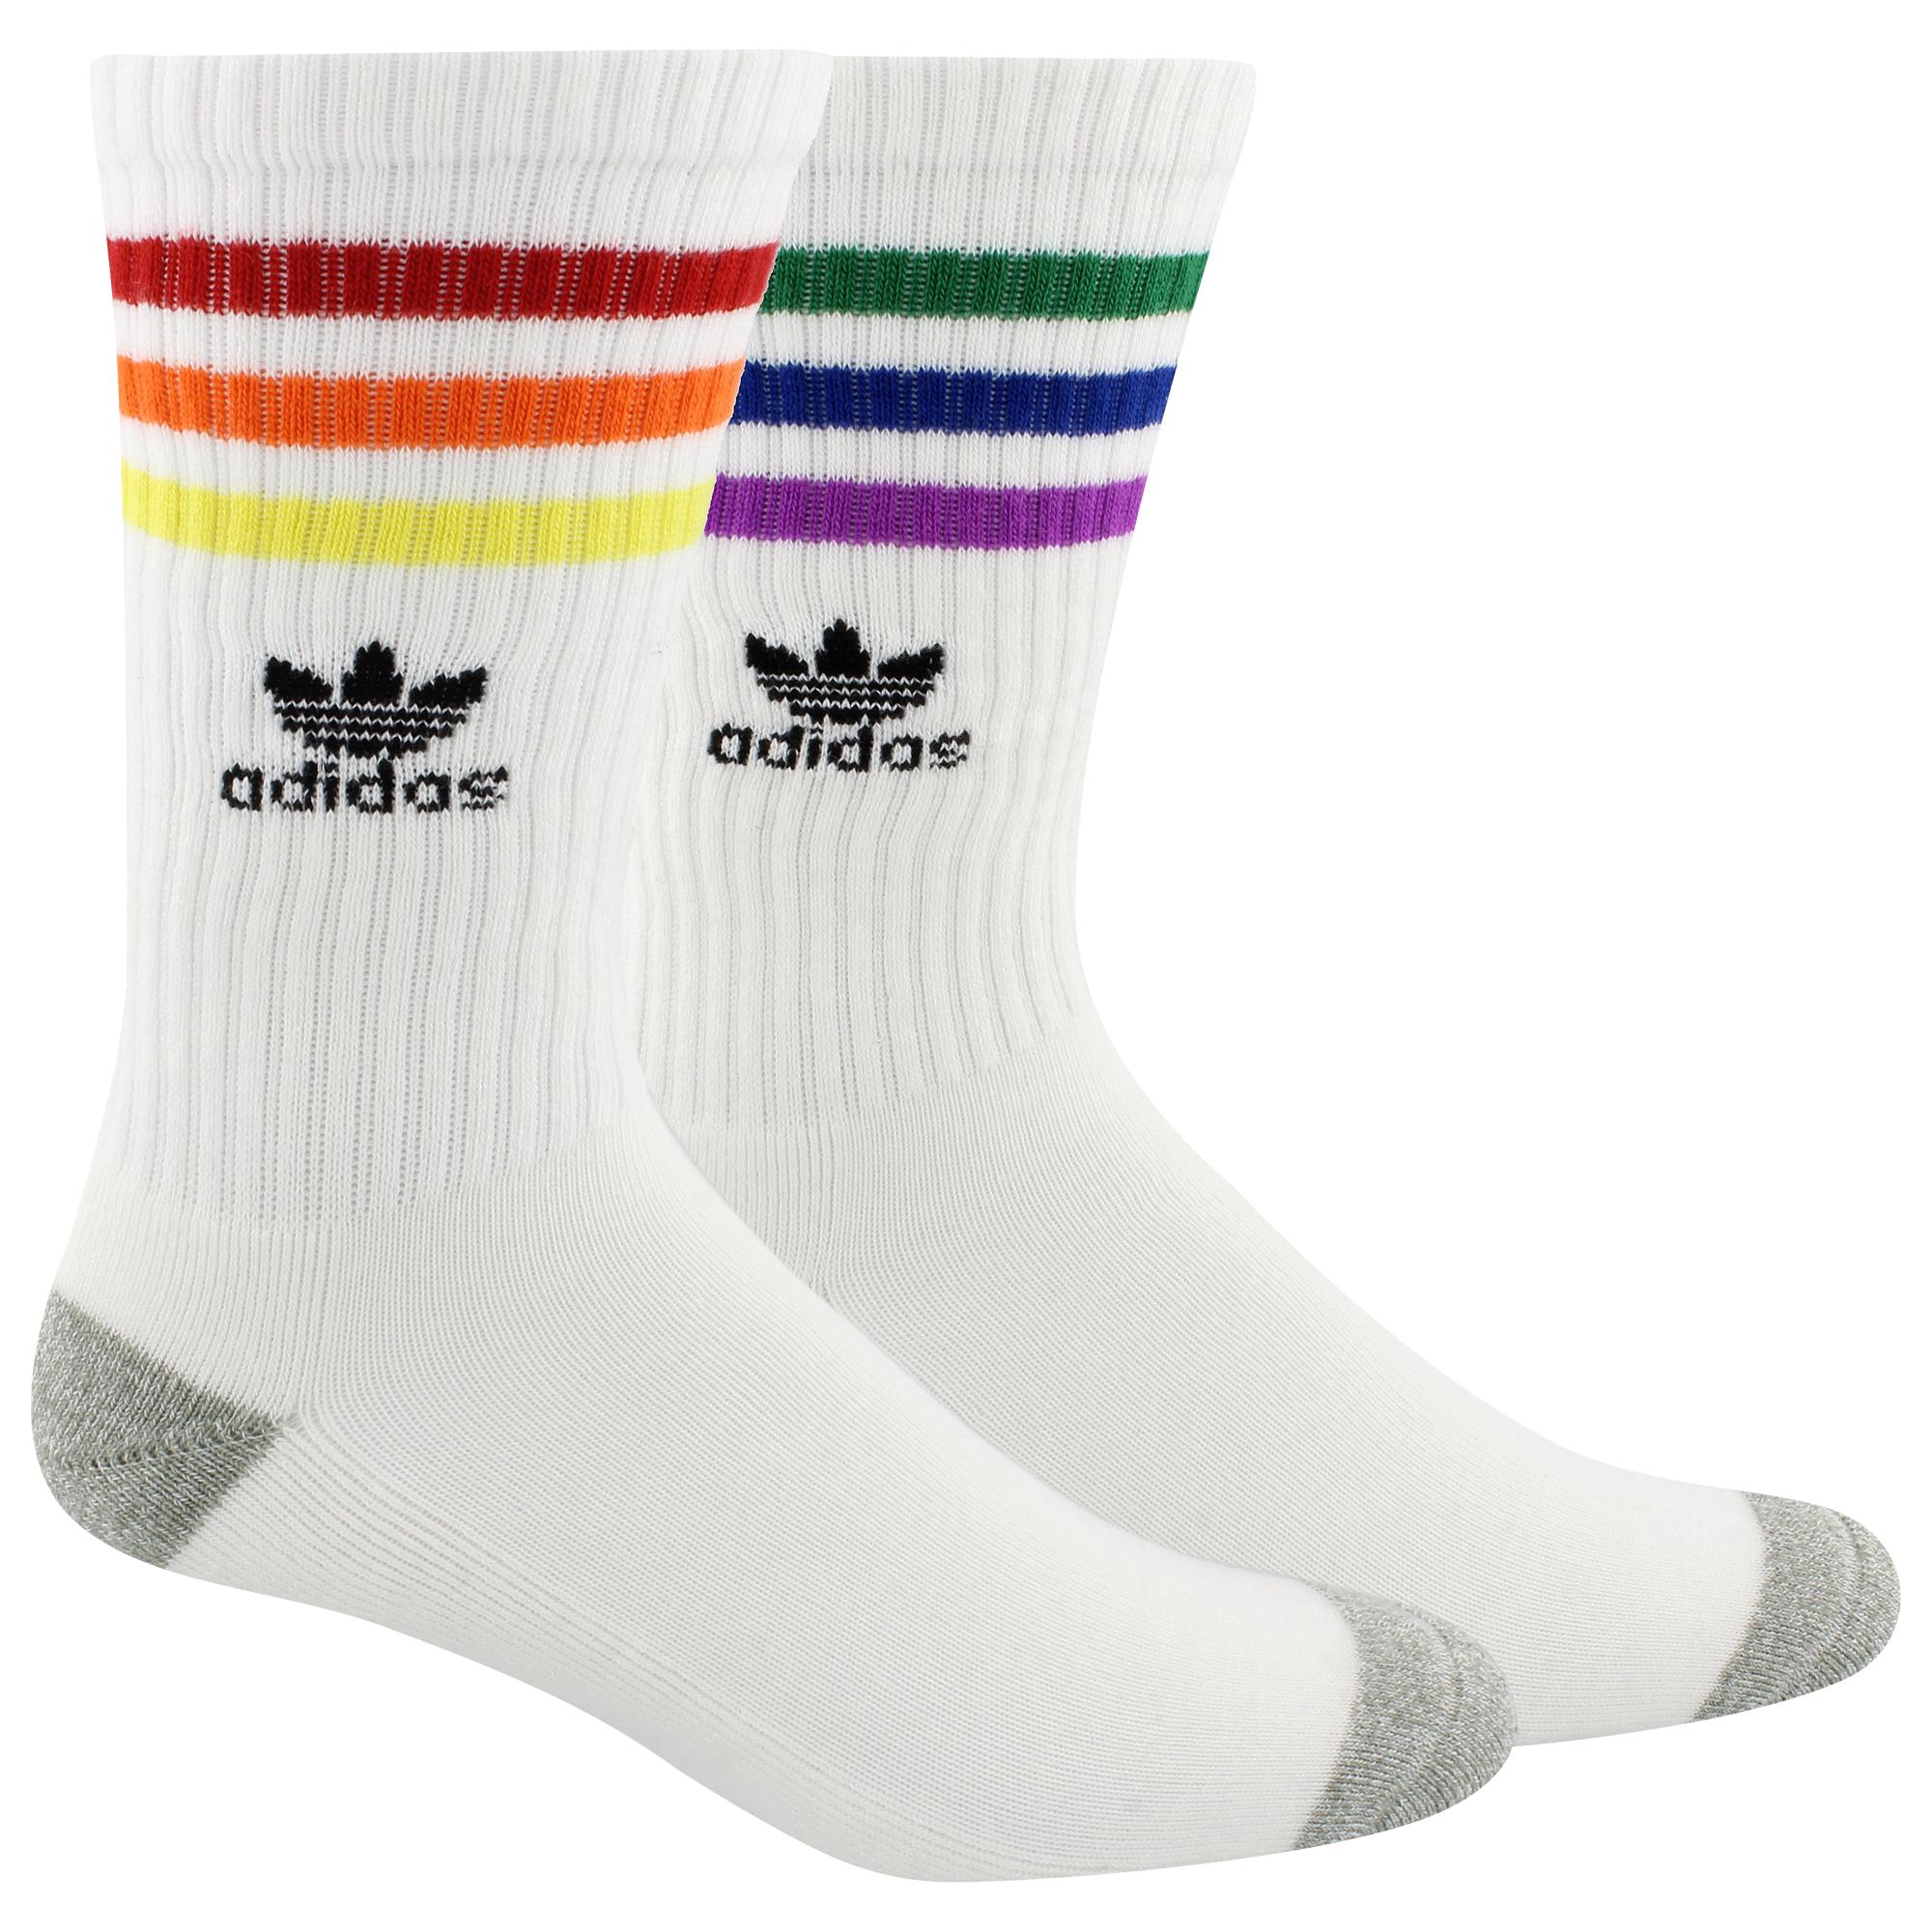 pride socks adidas